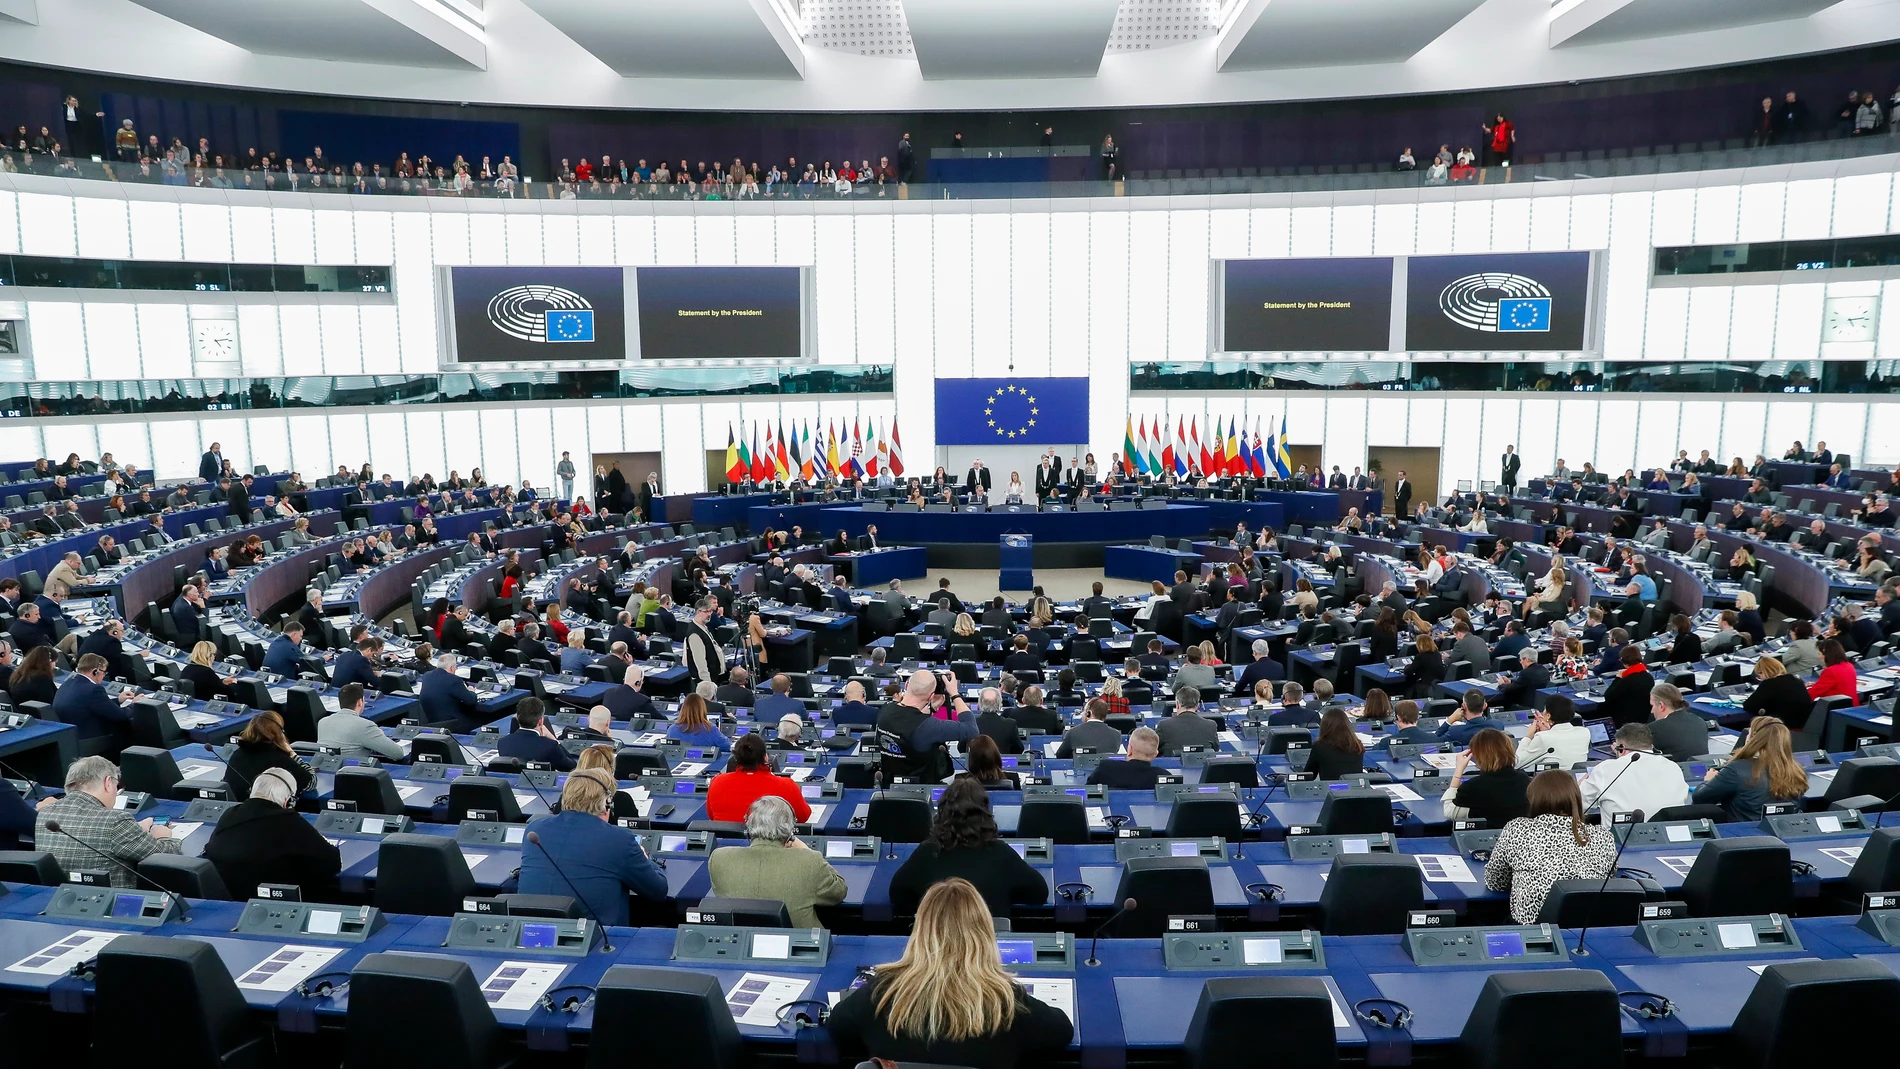 Vista general del salón de plenos al inicio de una sesión del Parlamento Europeo en Estrasburgo, Francia